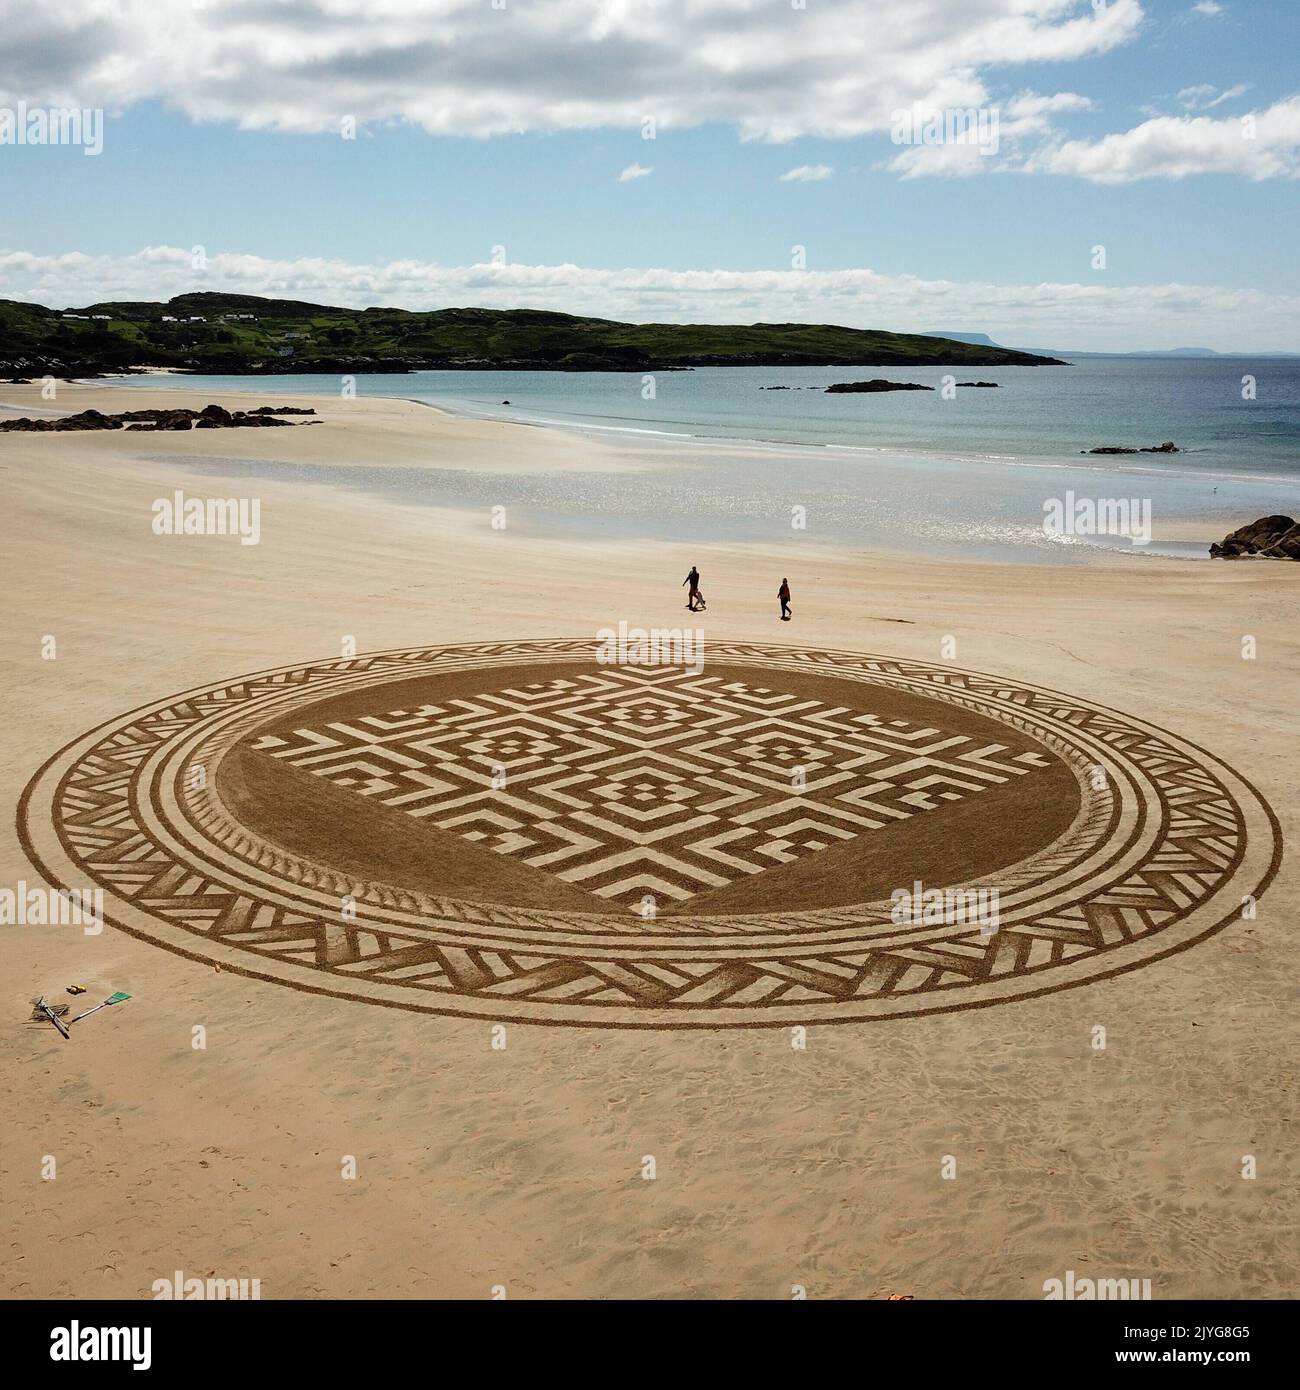 Ein atemberaubendes keltisches Muster. Irland, Großbritannien: VON PSYCHEDELISCH anmuternden Mustern bis hin zu riesigen Pooch-Porträts sind dies die besten Sandkunst-Meisterwerke, die es zu haben gilt Stockfoto